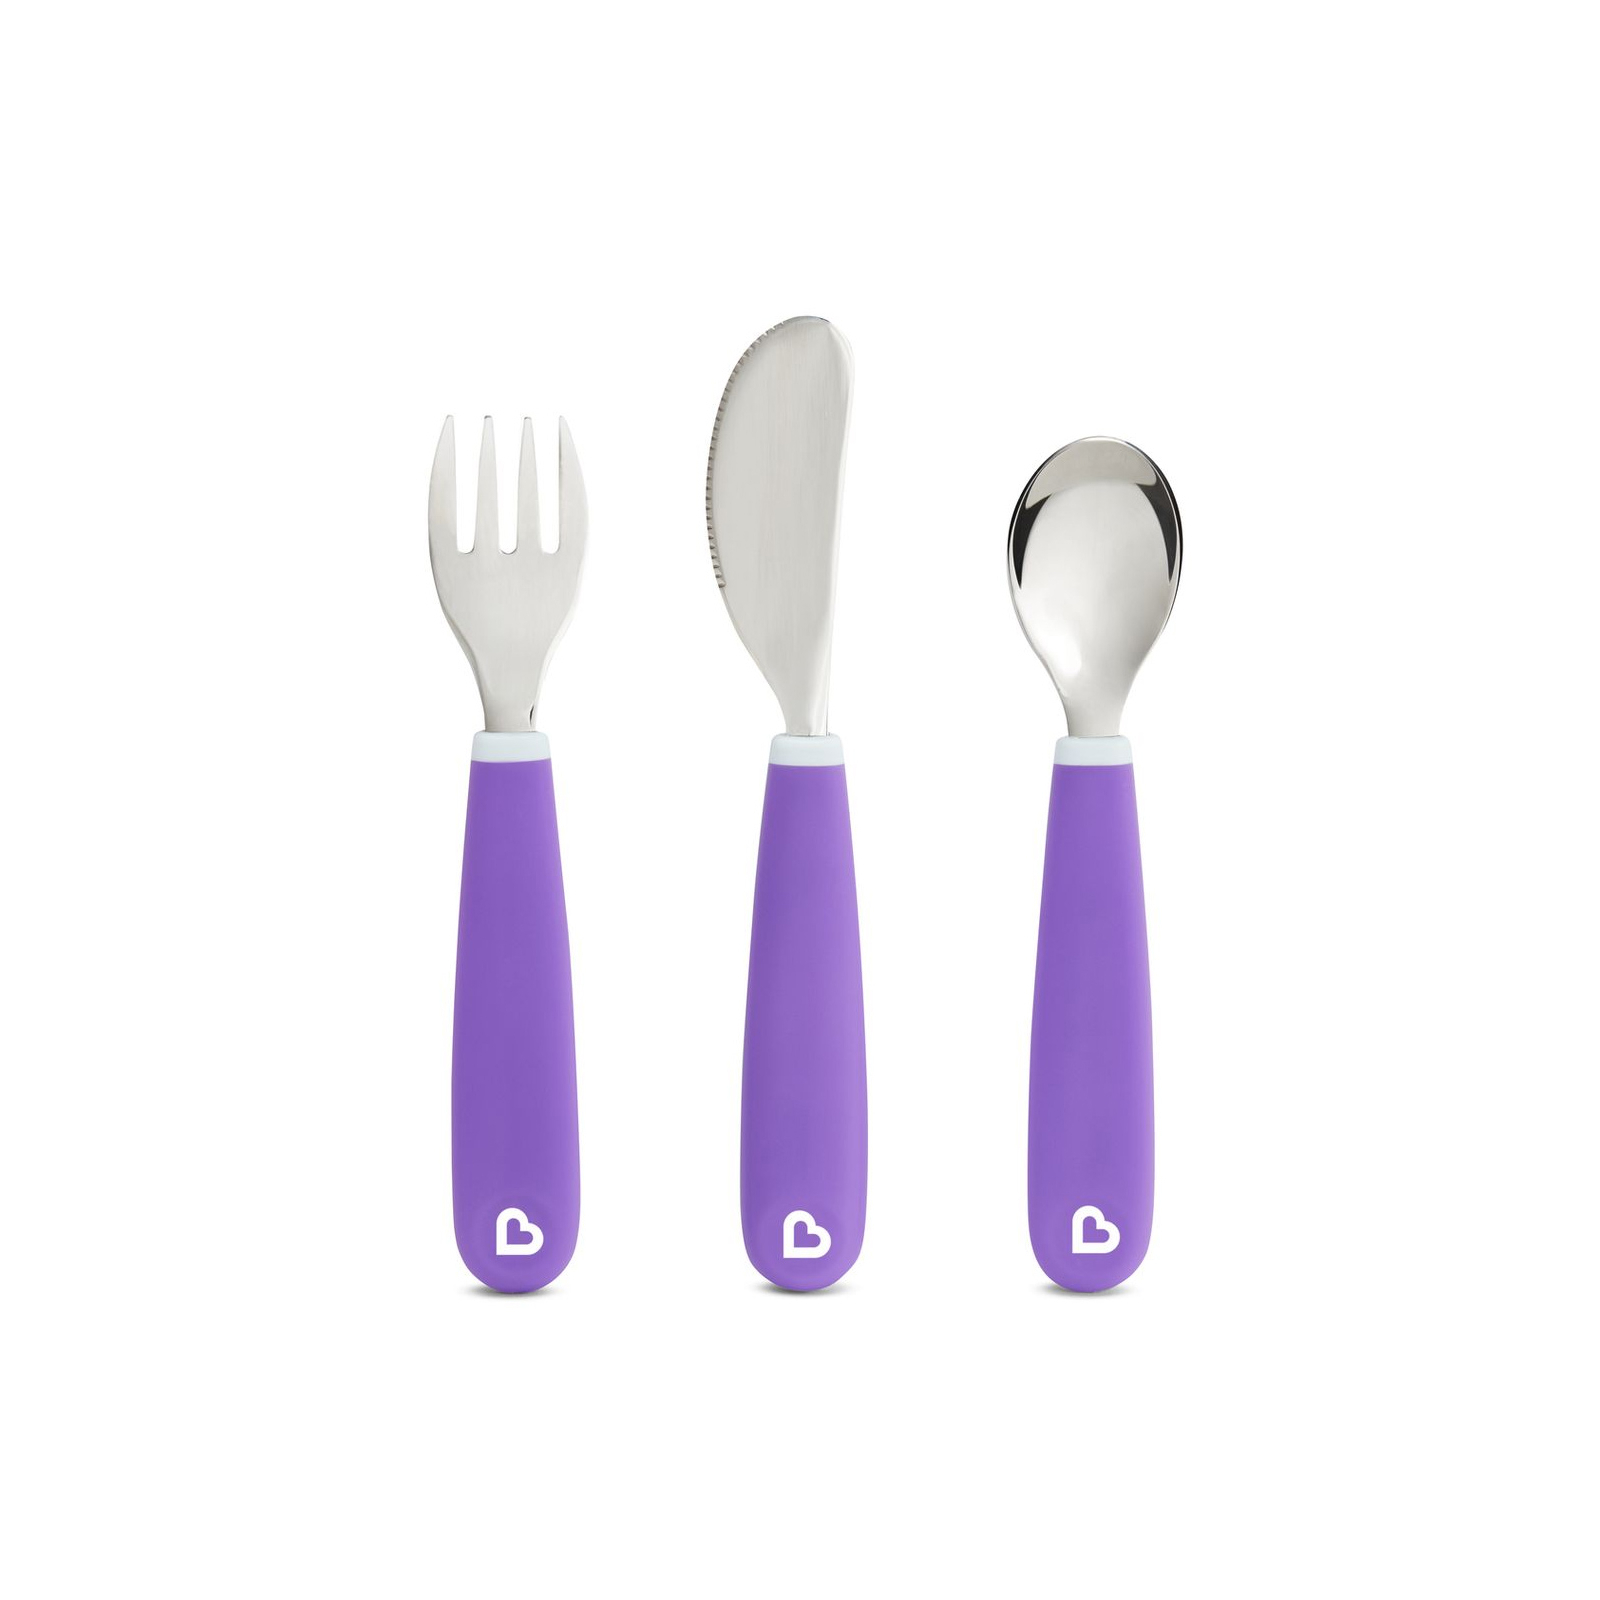 Набір дитячого посуду Munchkin Splash з неіржавкої сталі 3 предмети Фіолетовий (012110.04)